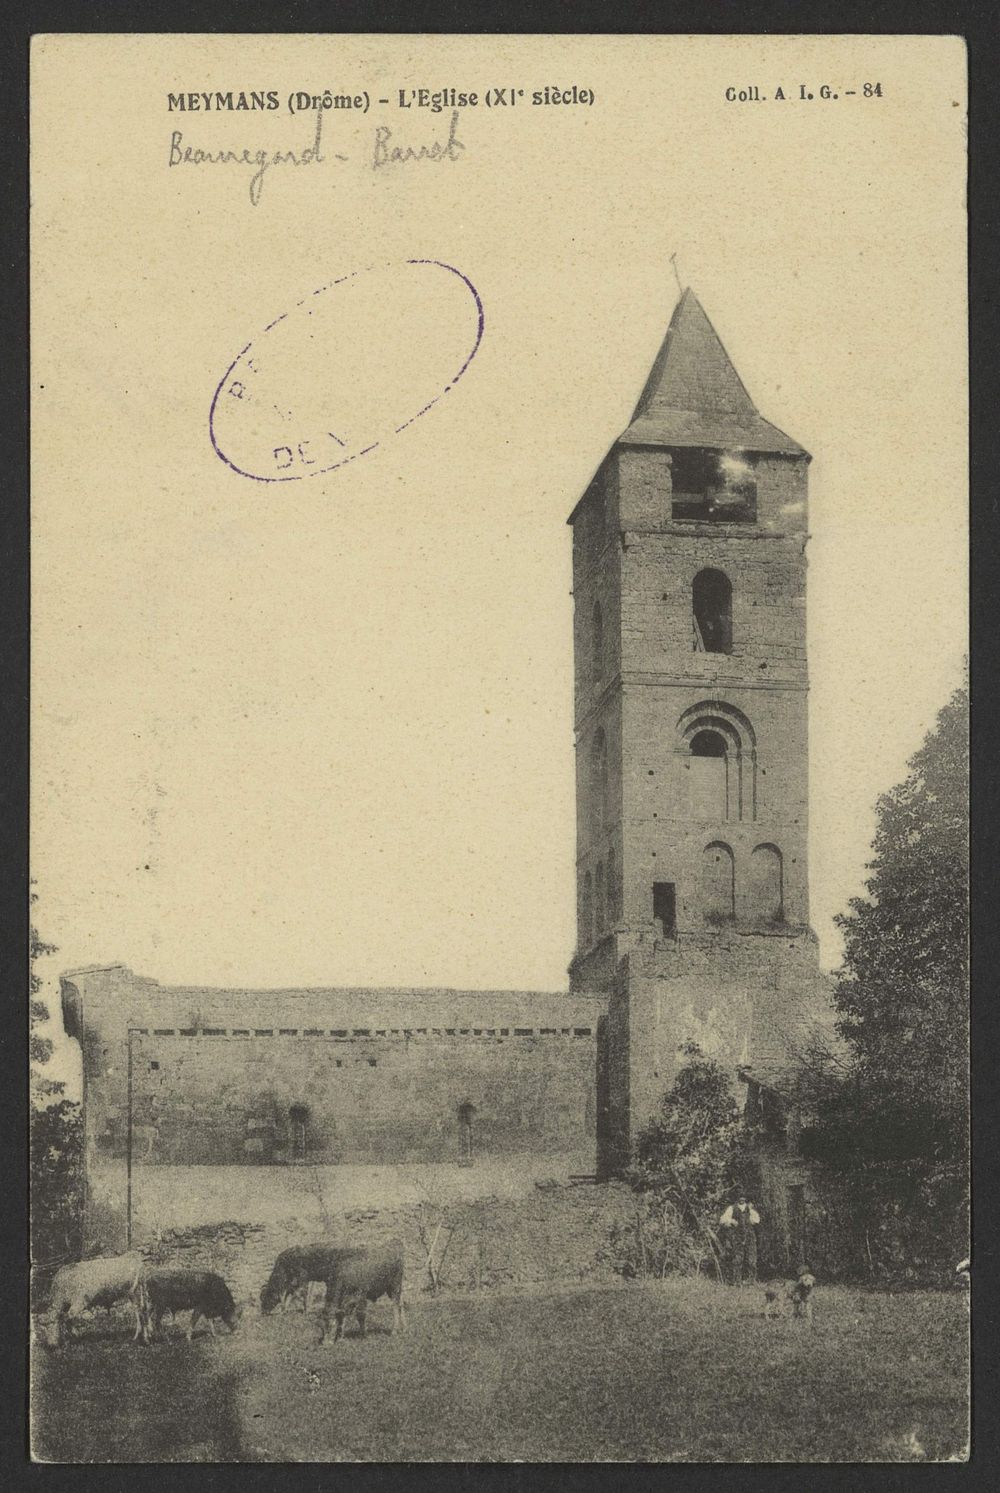 Meymans (Drôme) - L'Eglise (XIe siècle)